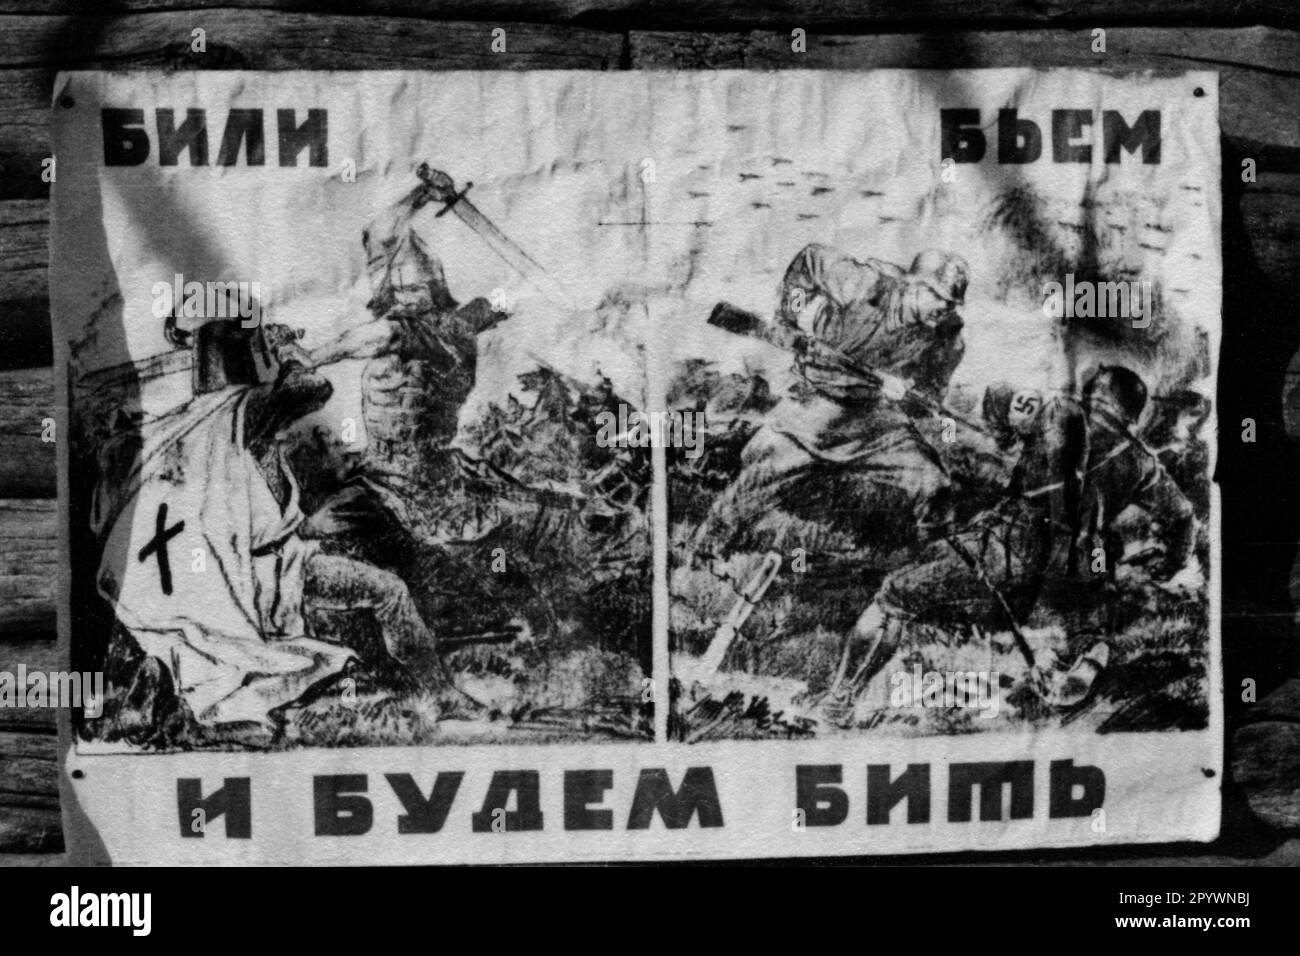 'Affiche russe de propagande de la Seconde Guerre mondiale, 1943: ''nous les avons battus, nous les avons battus, nous les avons battus''. [traduction automatique]' Banque D'Images